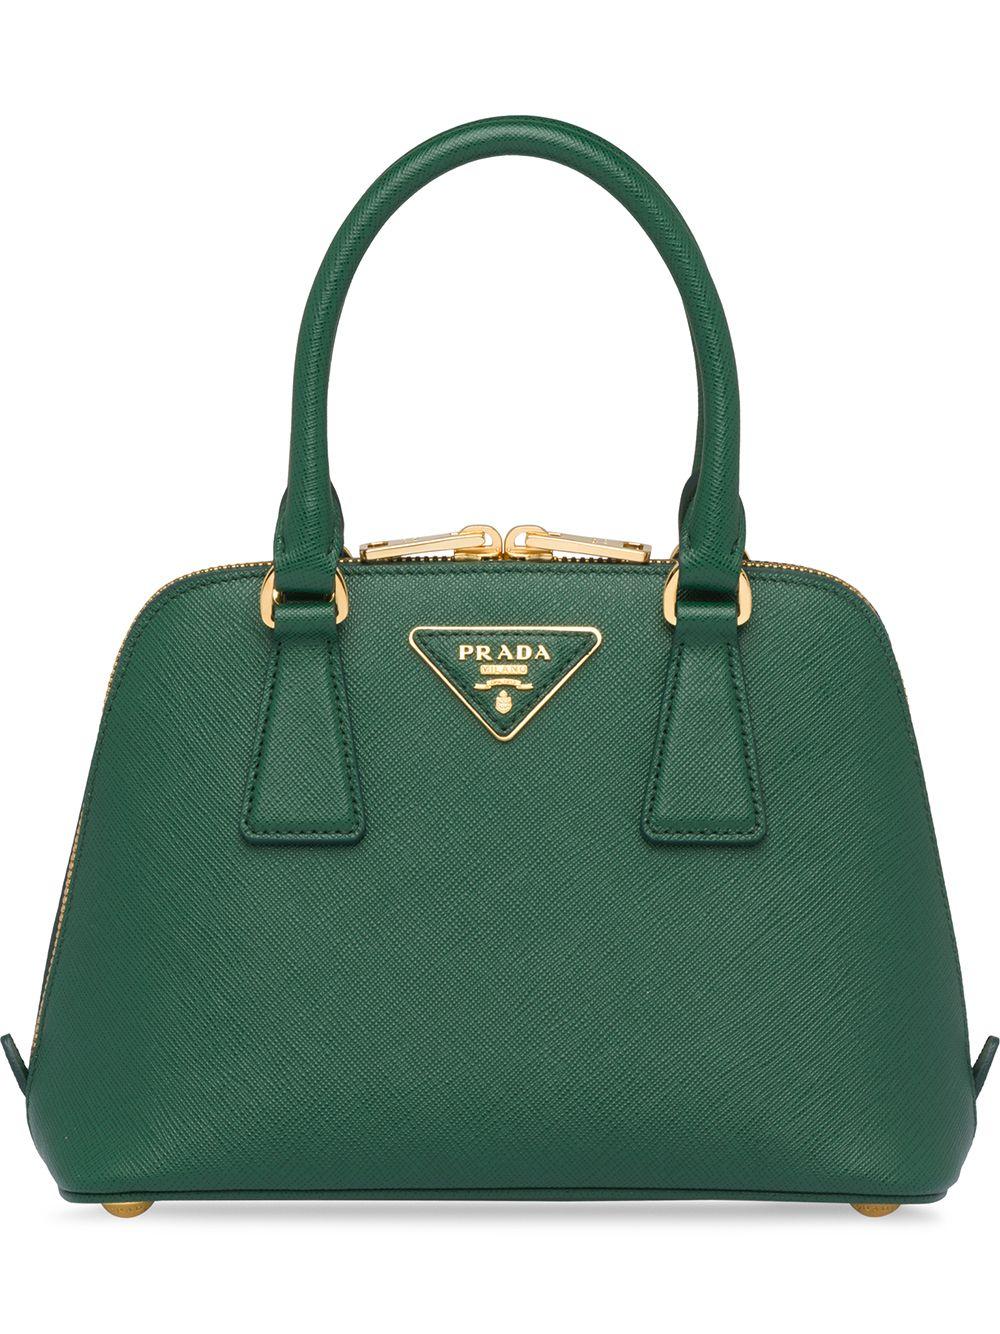 Prada Green Saffiano Leather Small Promenade Shoulder Bag Prada